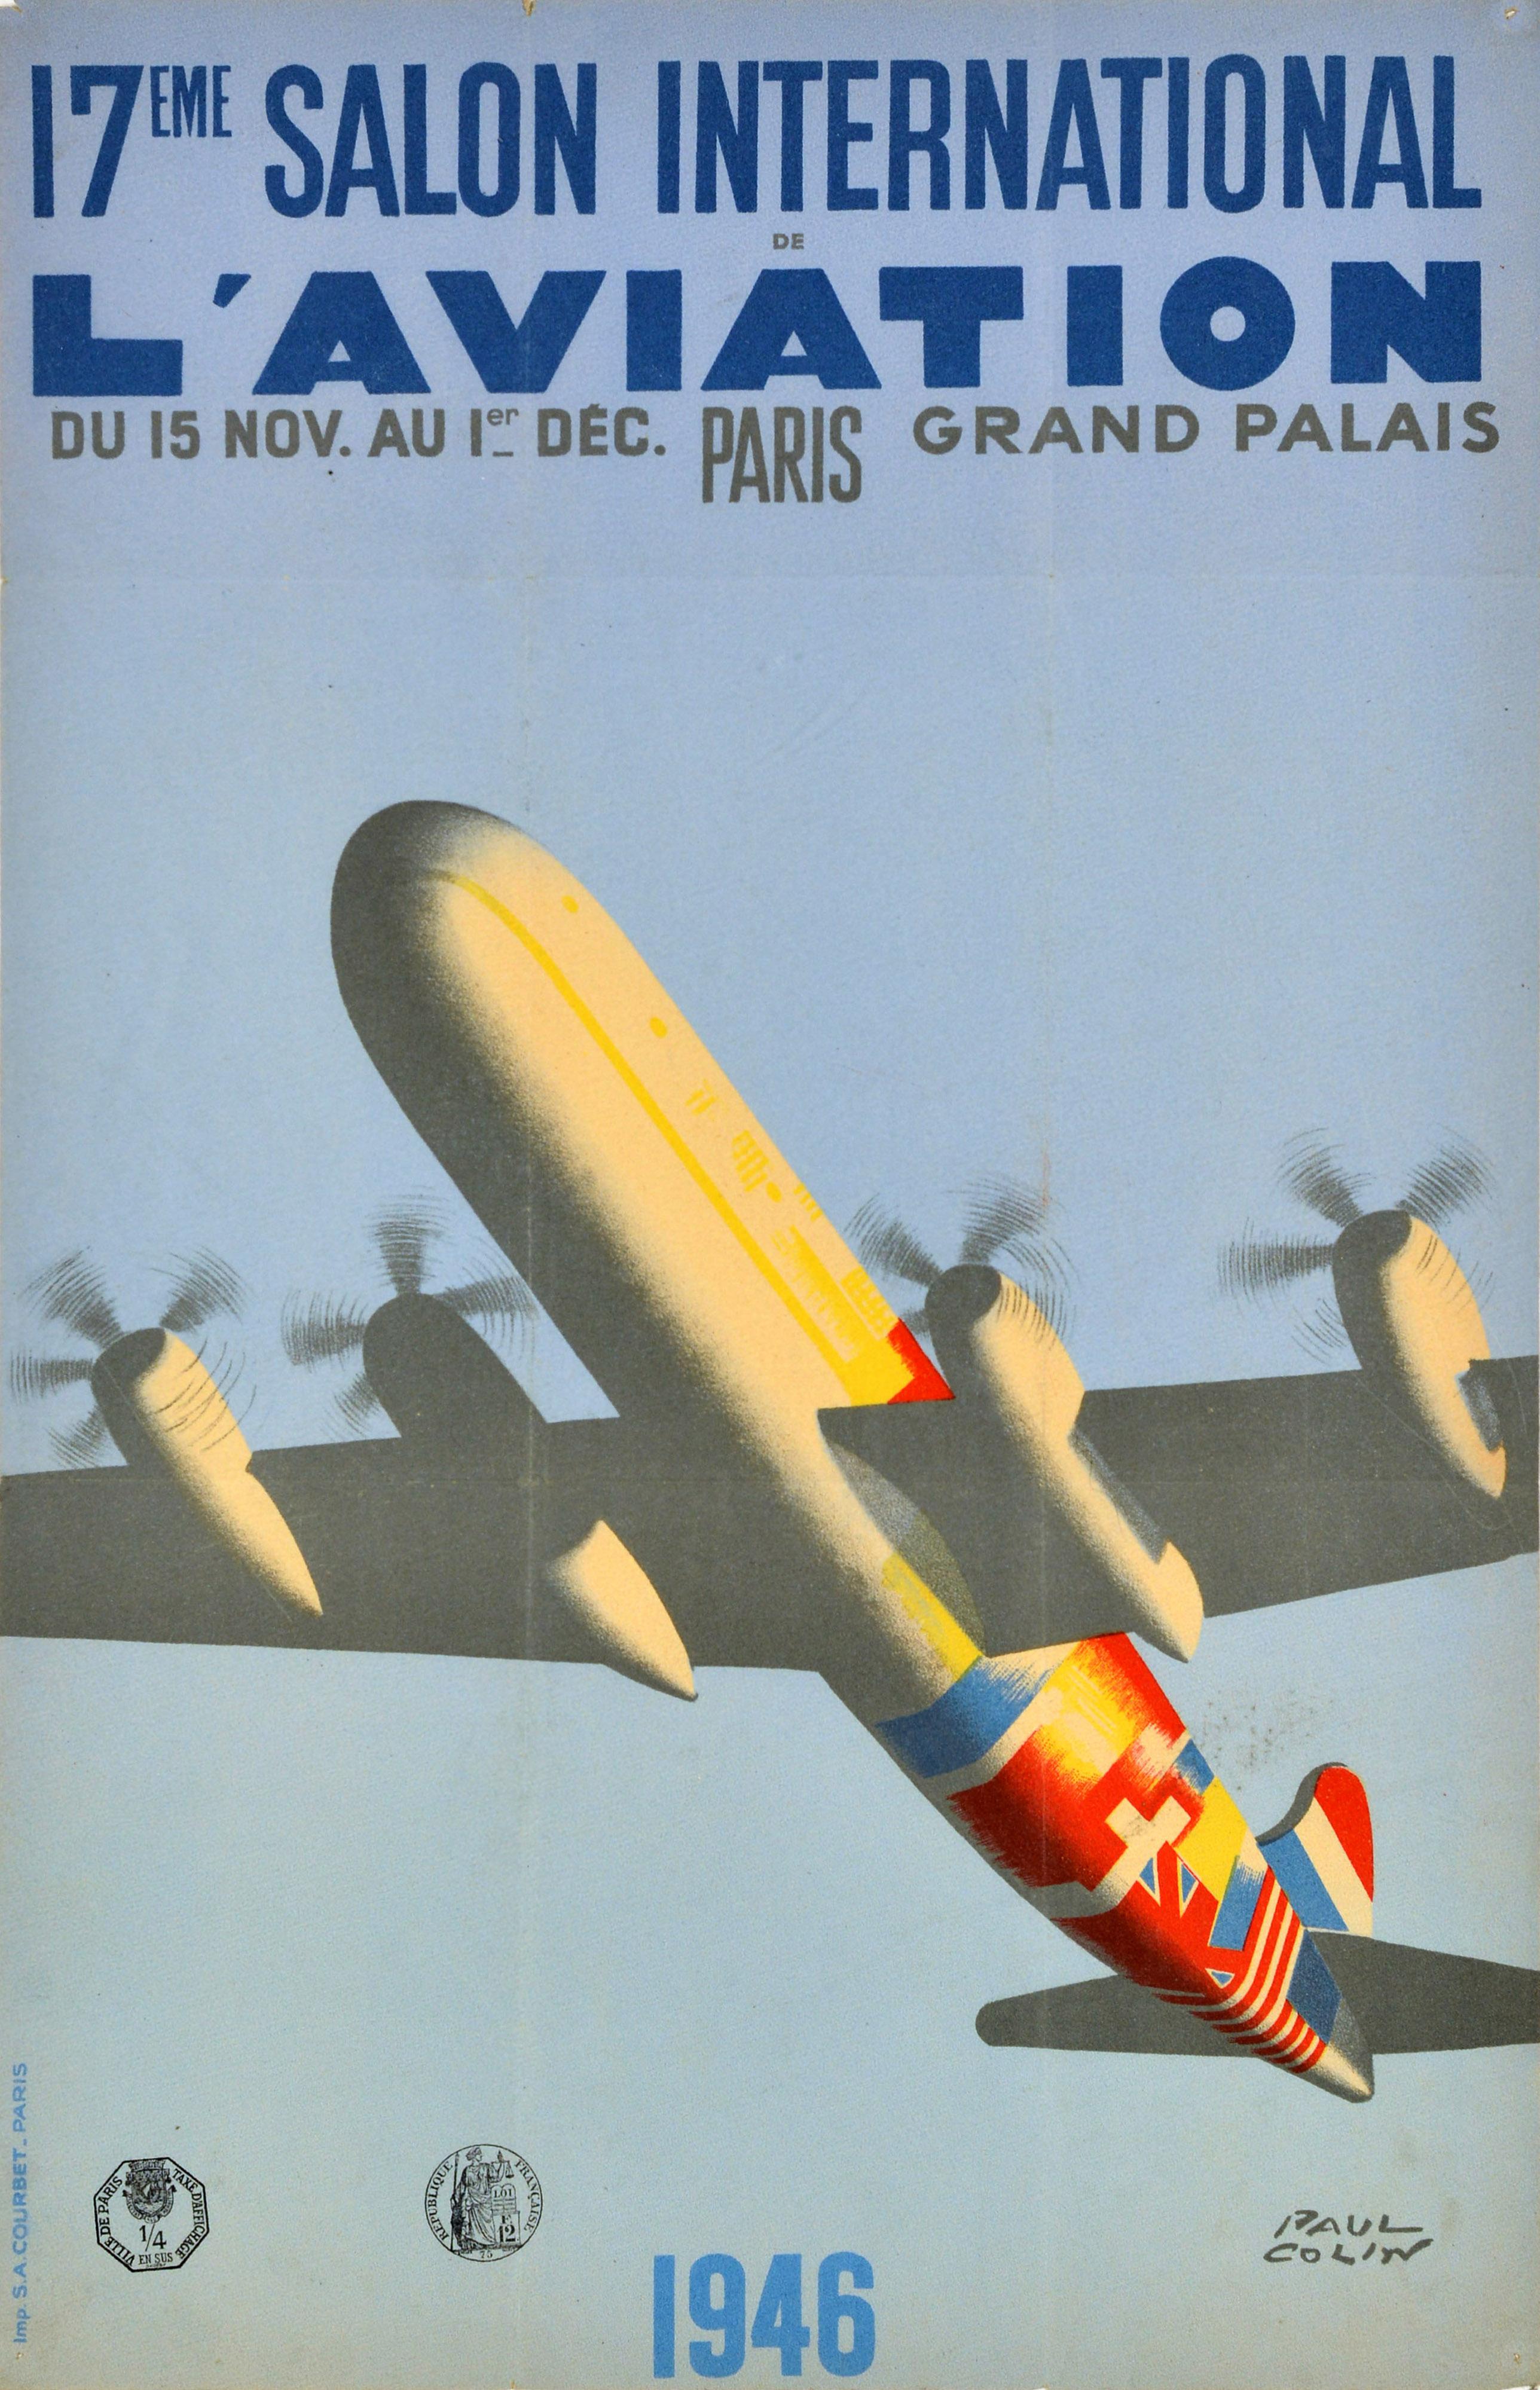 Originalplakat aus der Zeit nach dem Zweiten Weltkrieg für die 17. Internationale Luftfahrtausstellung - 17eme Salon International l'Aviation -, die vom 15. November bis 1. Dezember im Grand Palais Paris stattfand, mit einer großartigen Illustration